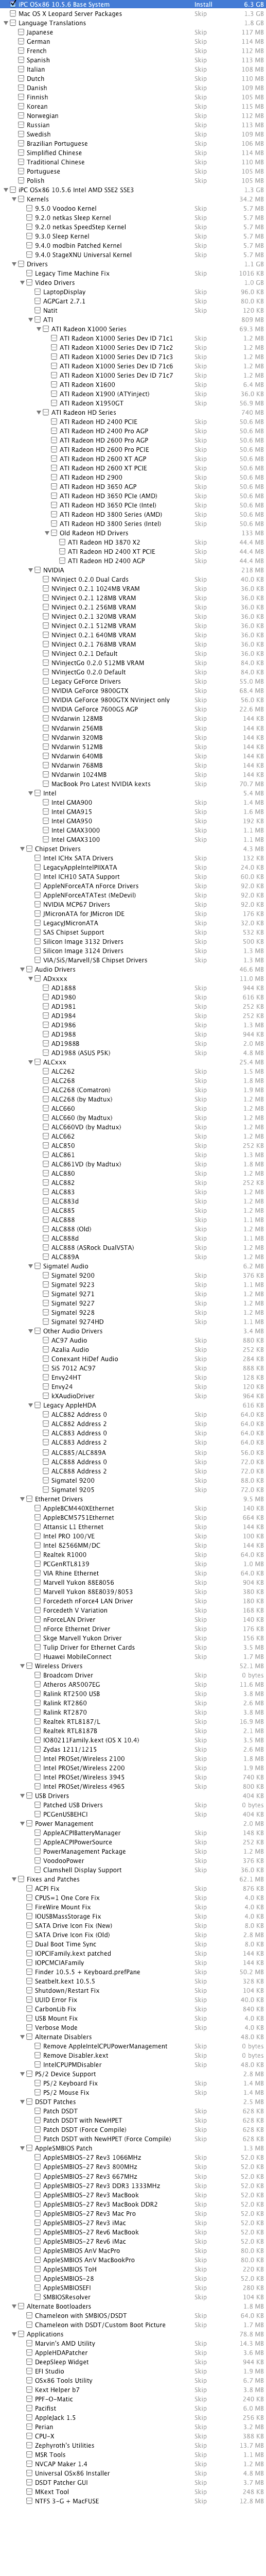 Список драйверов и фиксов в iPC X Live DVD